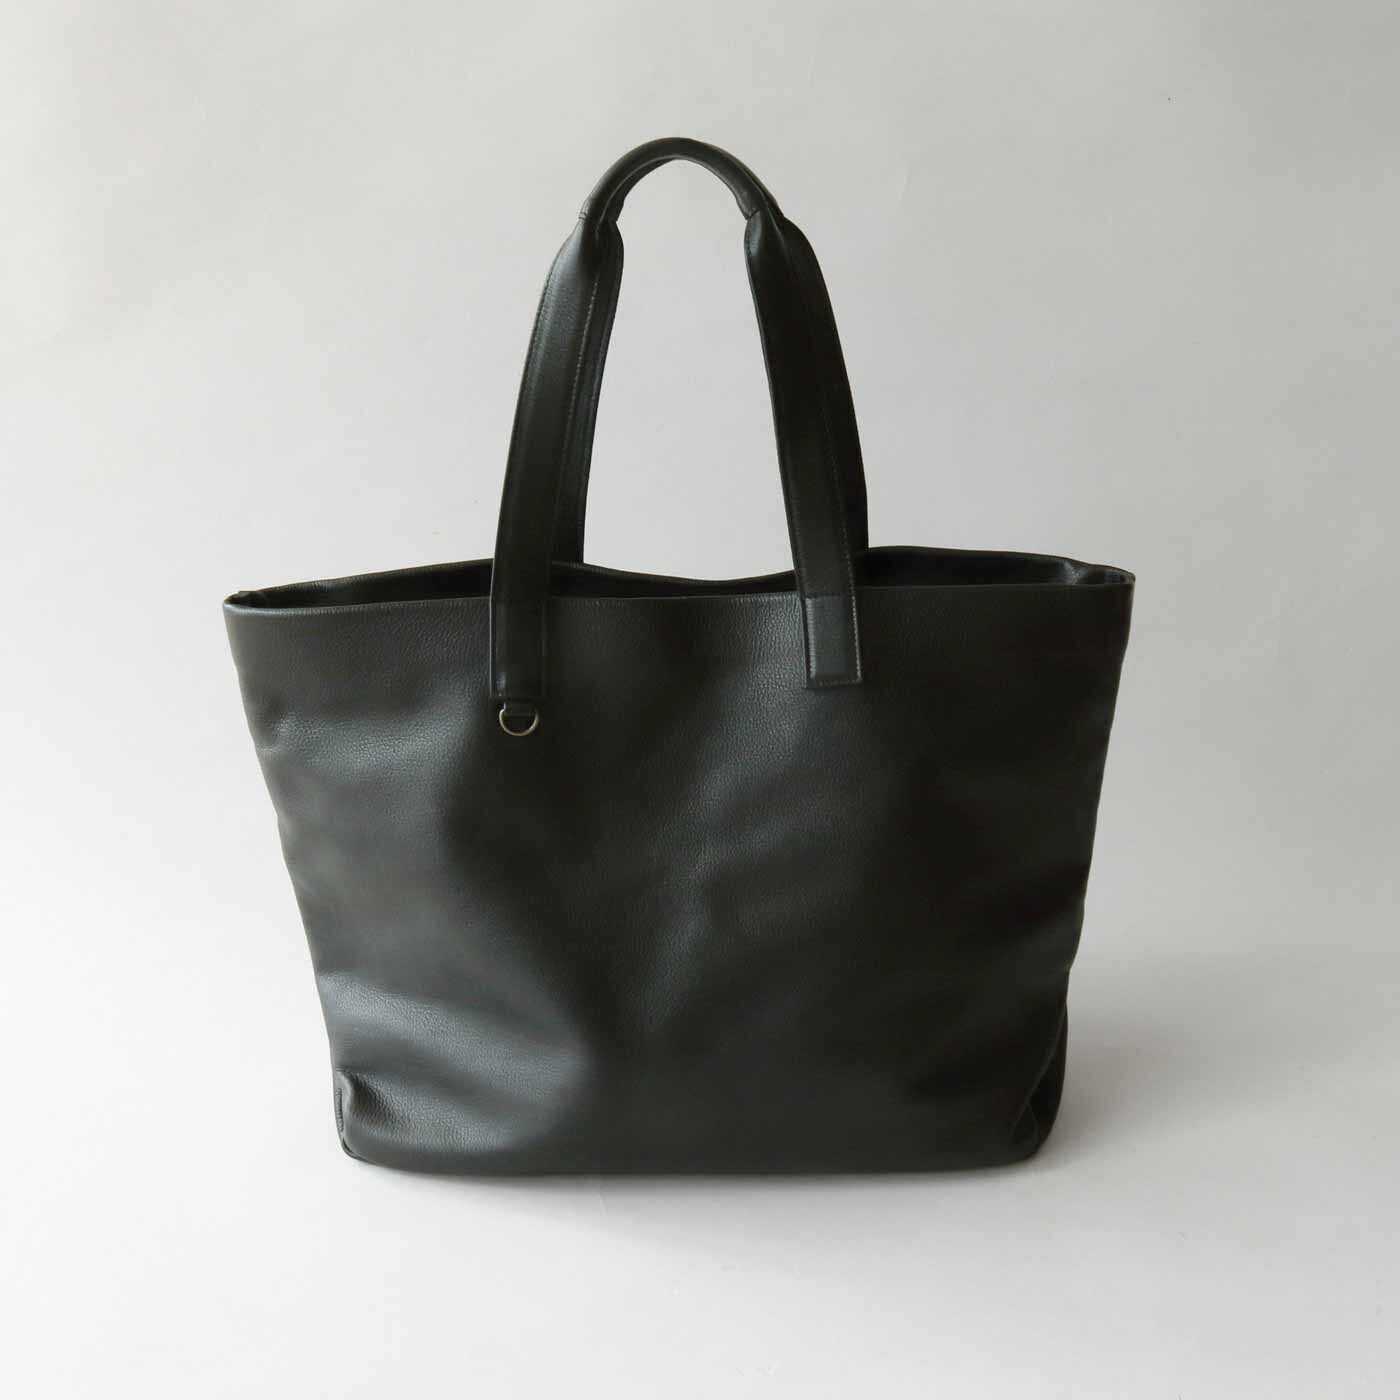 ＆Stories|福岡の鞄作家が作った 職人本革のホエールトートバッグ〈ブラック〉|布バッグのように折りたためるほどのやわらかさ。